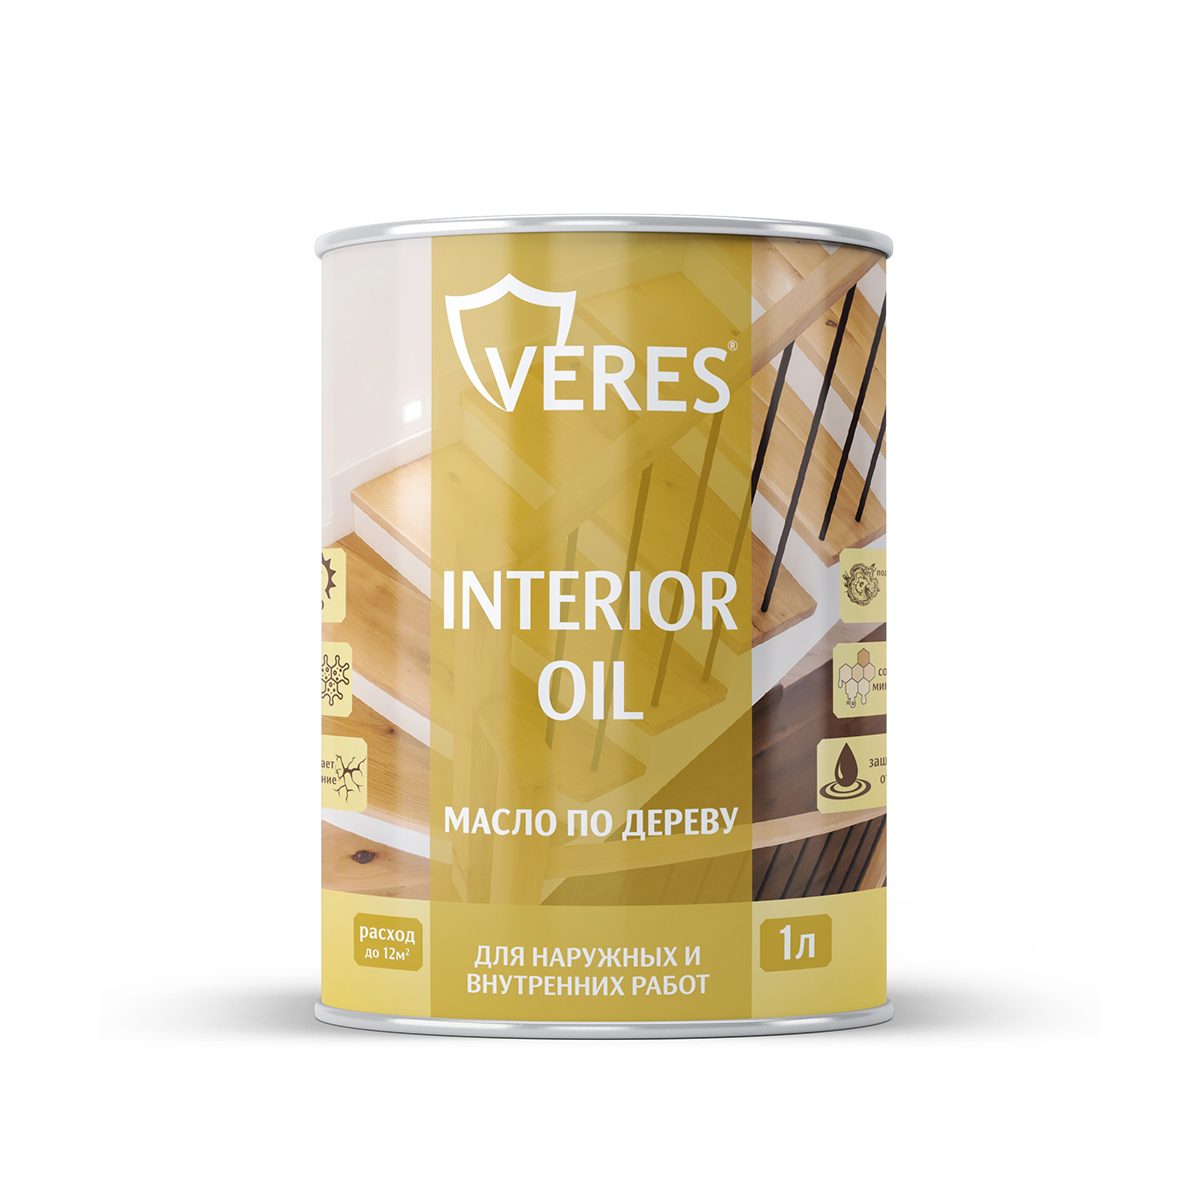 Масло для дерева Veres Interior Oil, 1 л, сосна масло детское для тела после купания 115мл